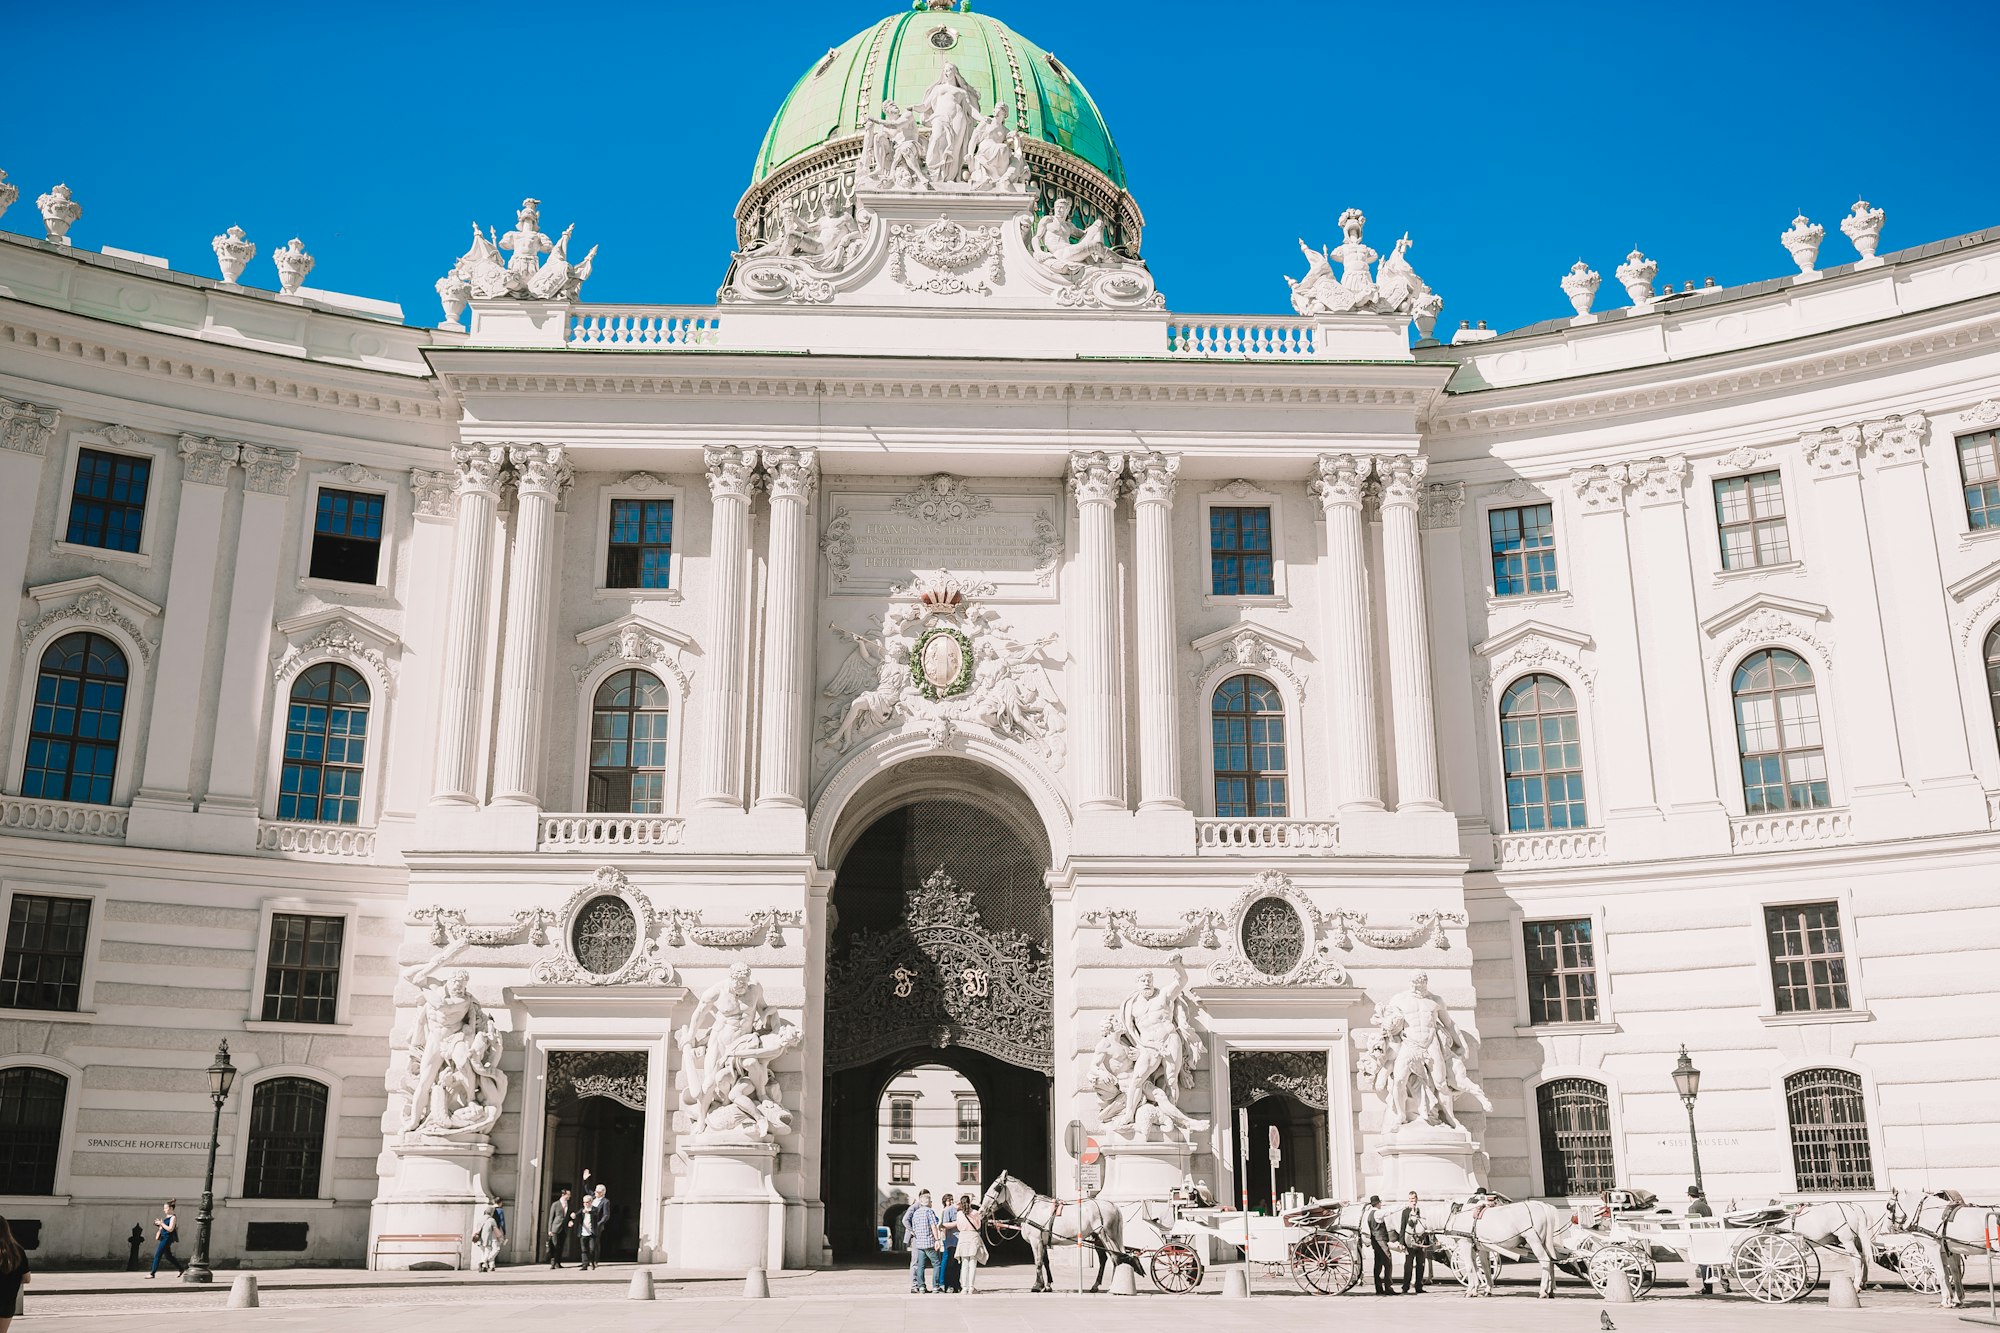 Alte Hofburg in Vienna city at Austria